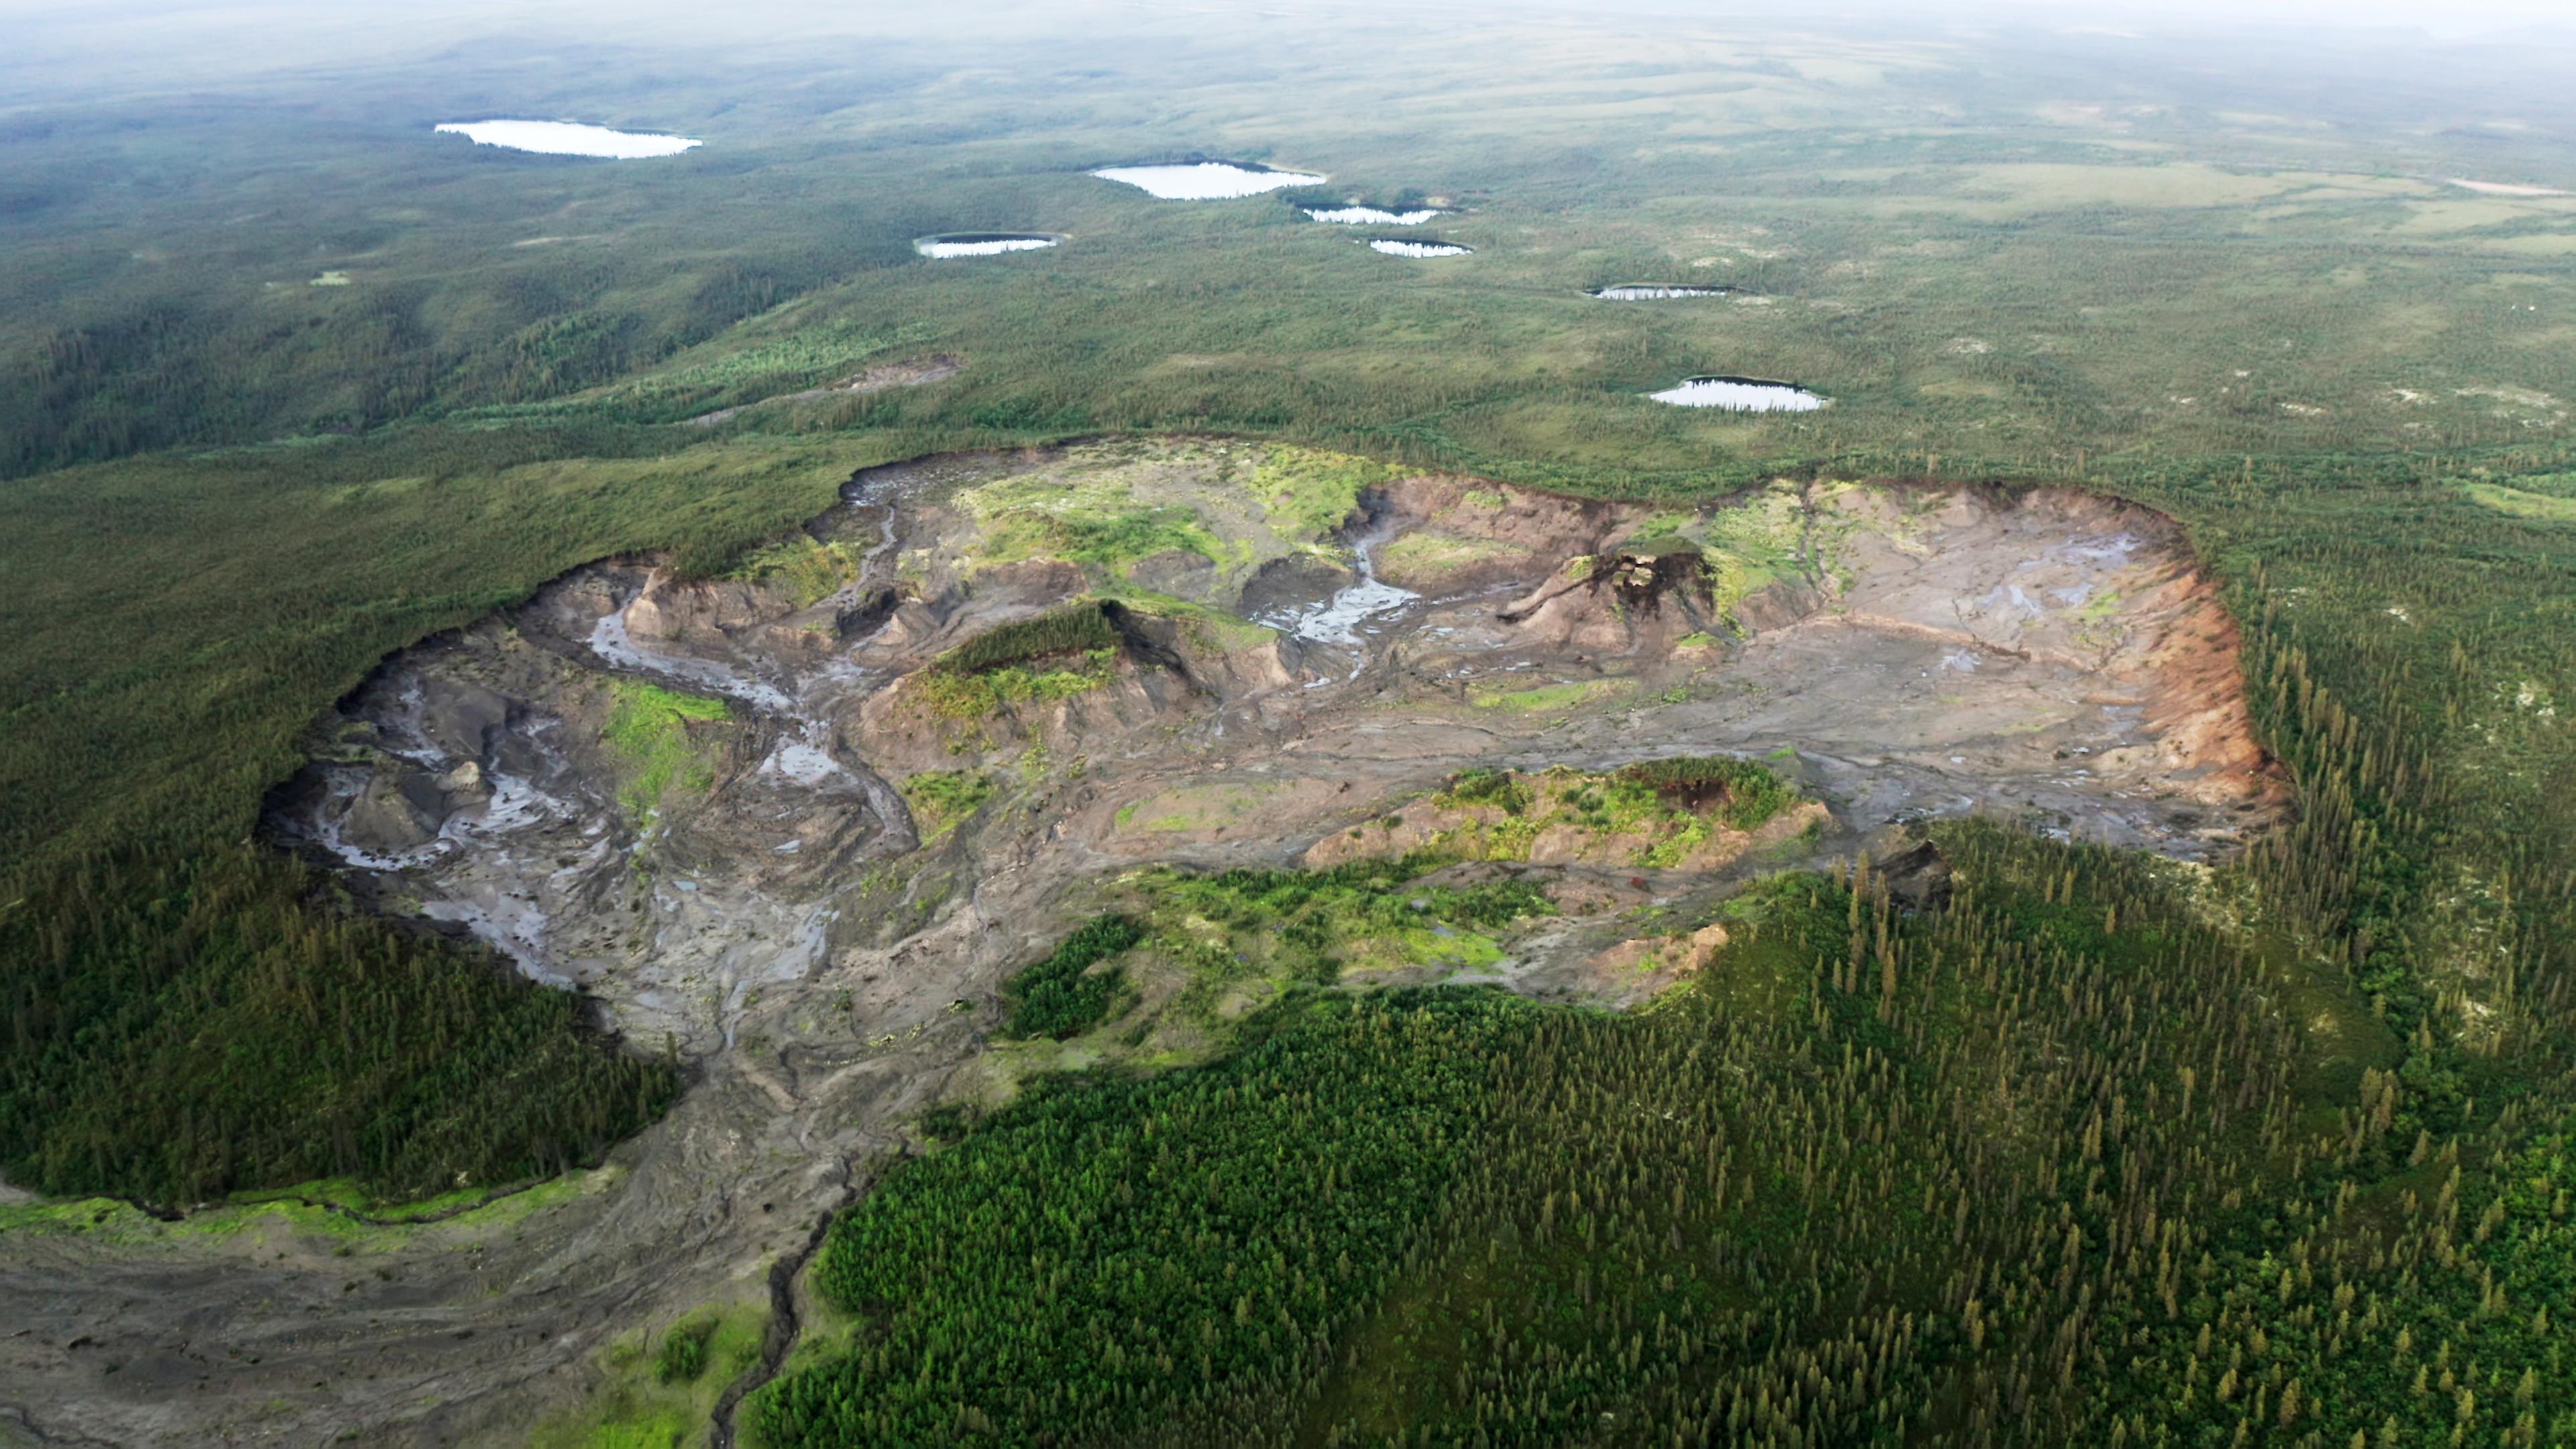 Luftaufnahme eines Waldgebietes, in dessen Mitte ein riesiger Krater zu sehen ist.